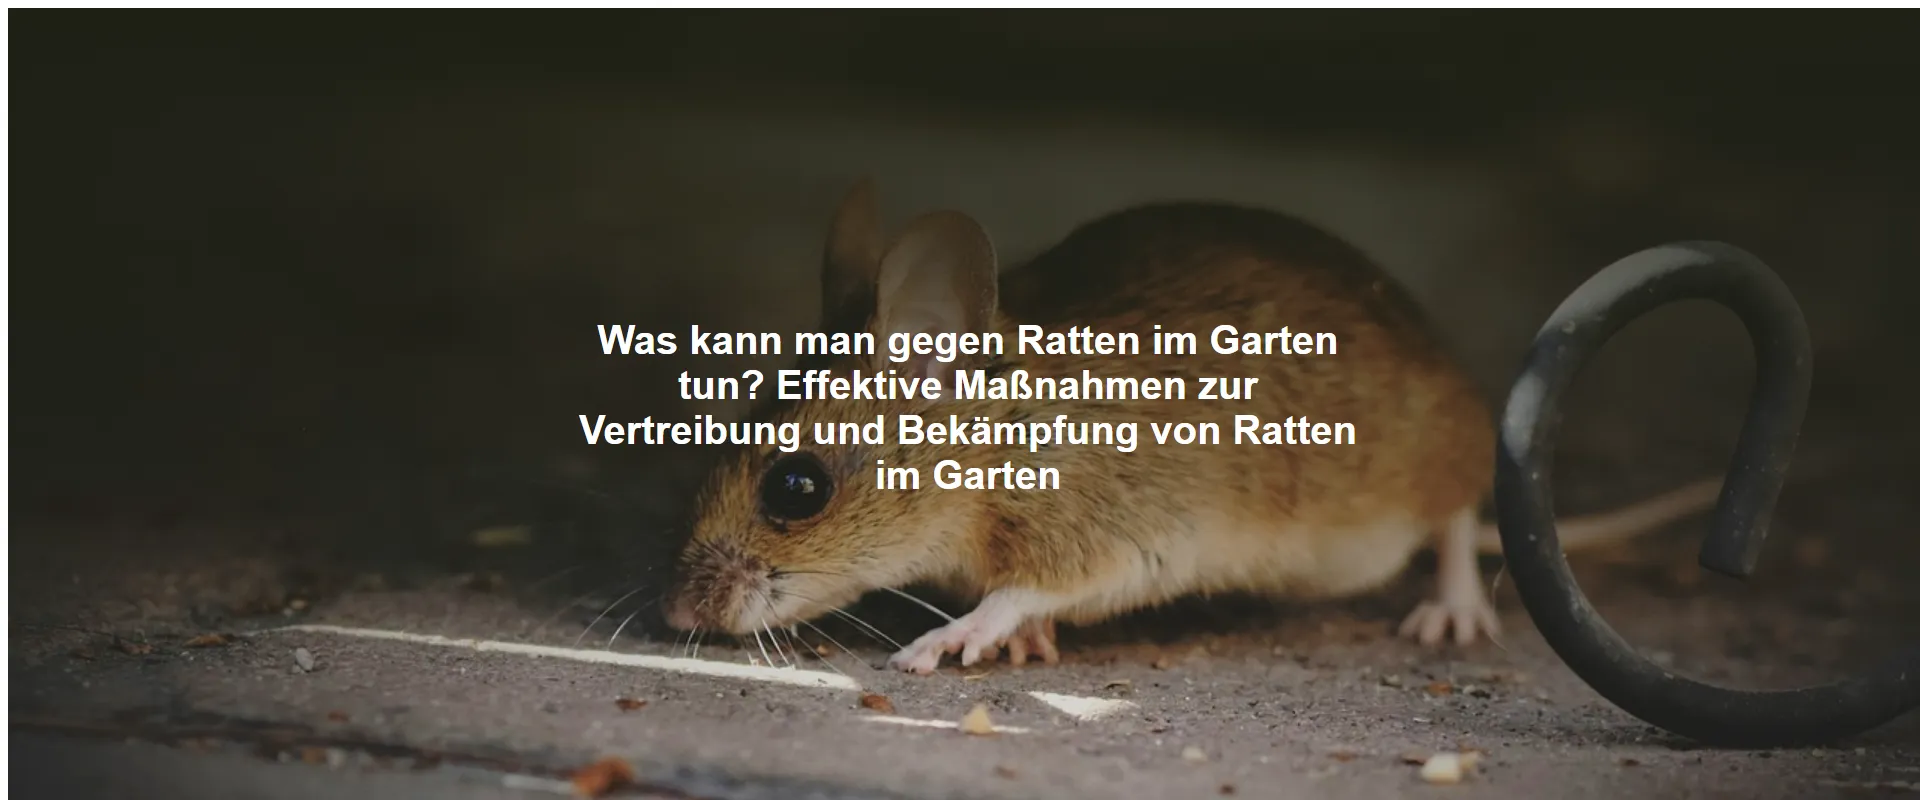 Was kann man gegen Ratten im Garten tun? Effektive Maßnahmen zur Vertreibung und Bekämpfung von Ratten im Garten